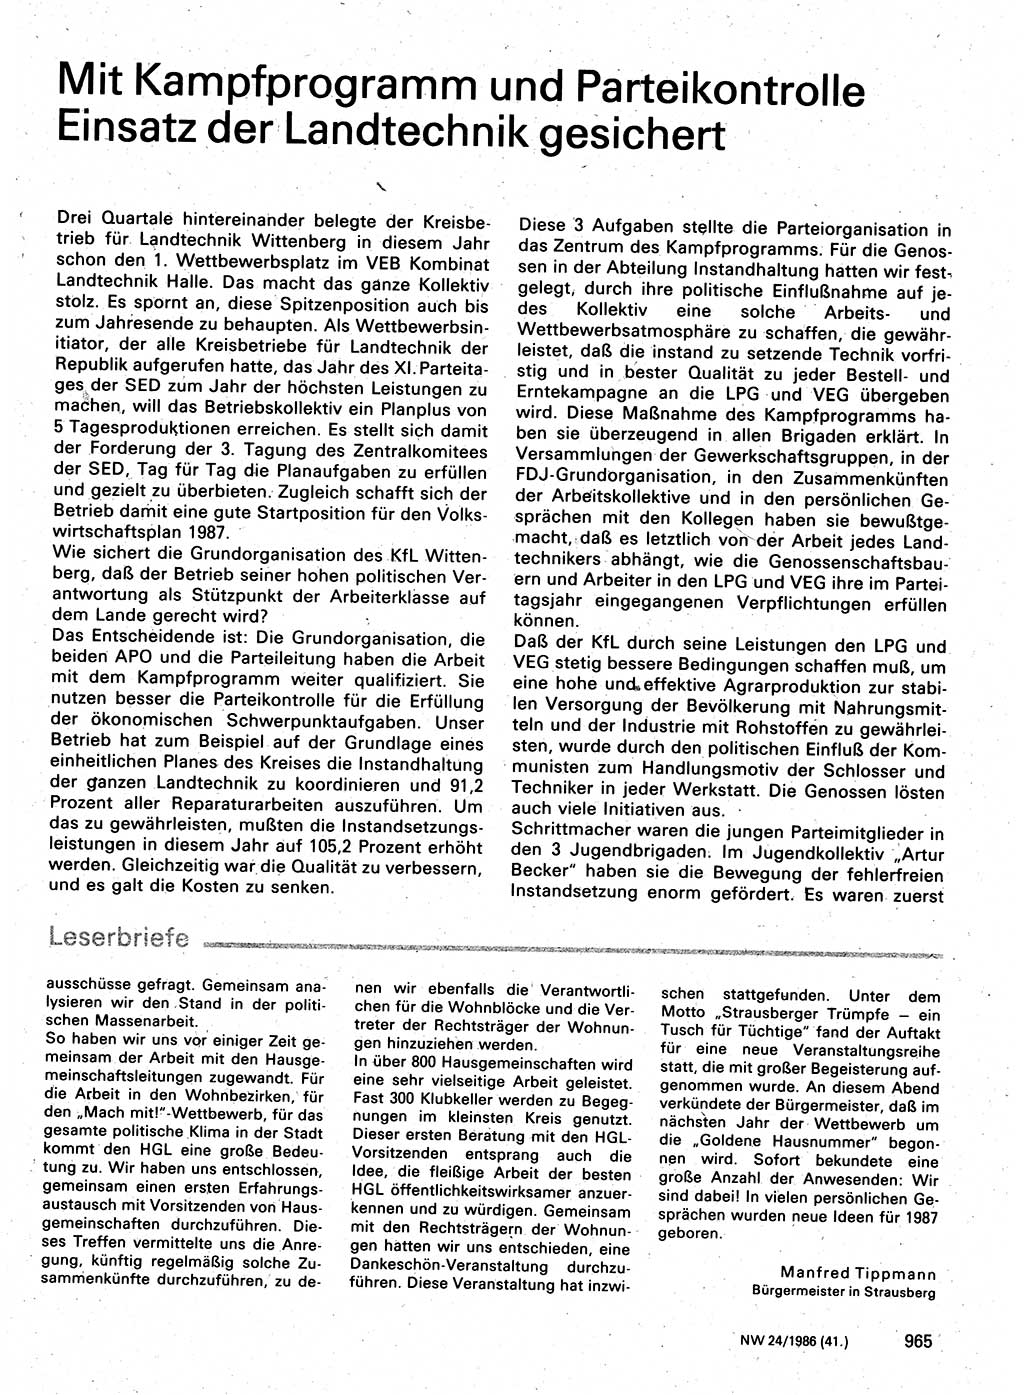 Neuer Weg (NW), Organ des Zentralkomitees (ZK) der SED (Sozialistische Einheitspartei Deutschlands) für Fragen des Parteilebens, 41. Jahrgang [Deutsche Demokratische Republik (DDR)] 1986, Seite 965 (NW ZK SED DDR 1986, S. 965)